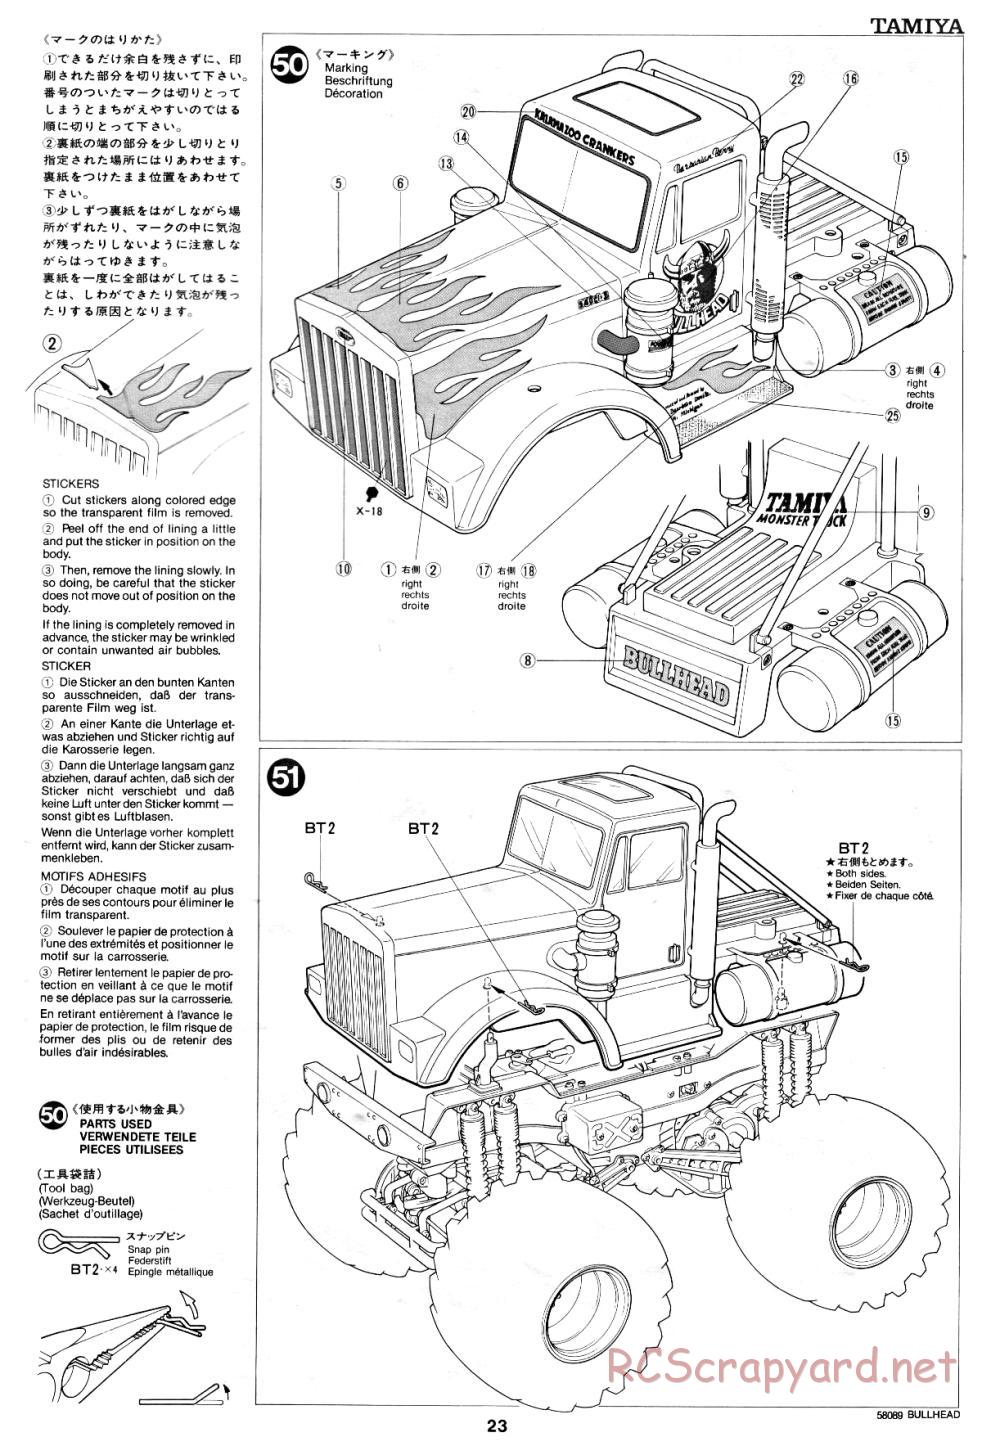 Tamiya - Bullhead - 58089 - Manual - Page 23